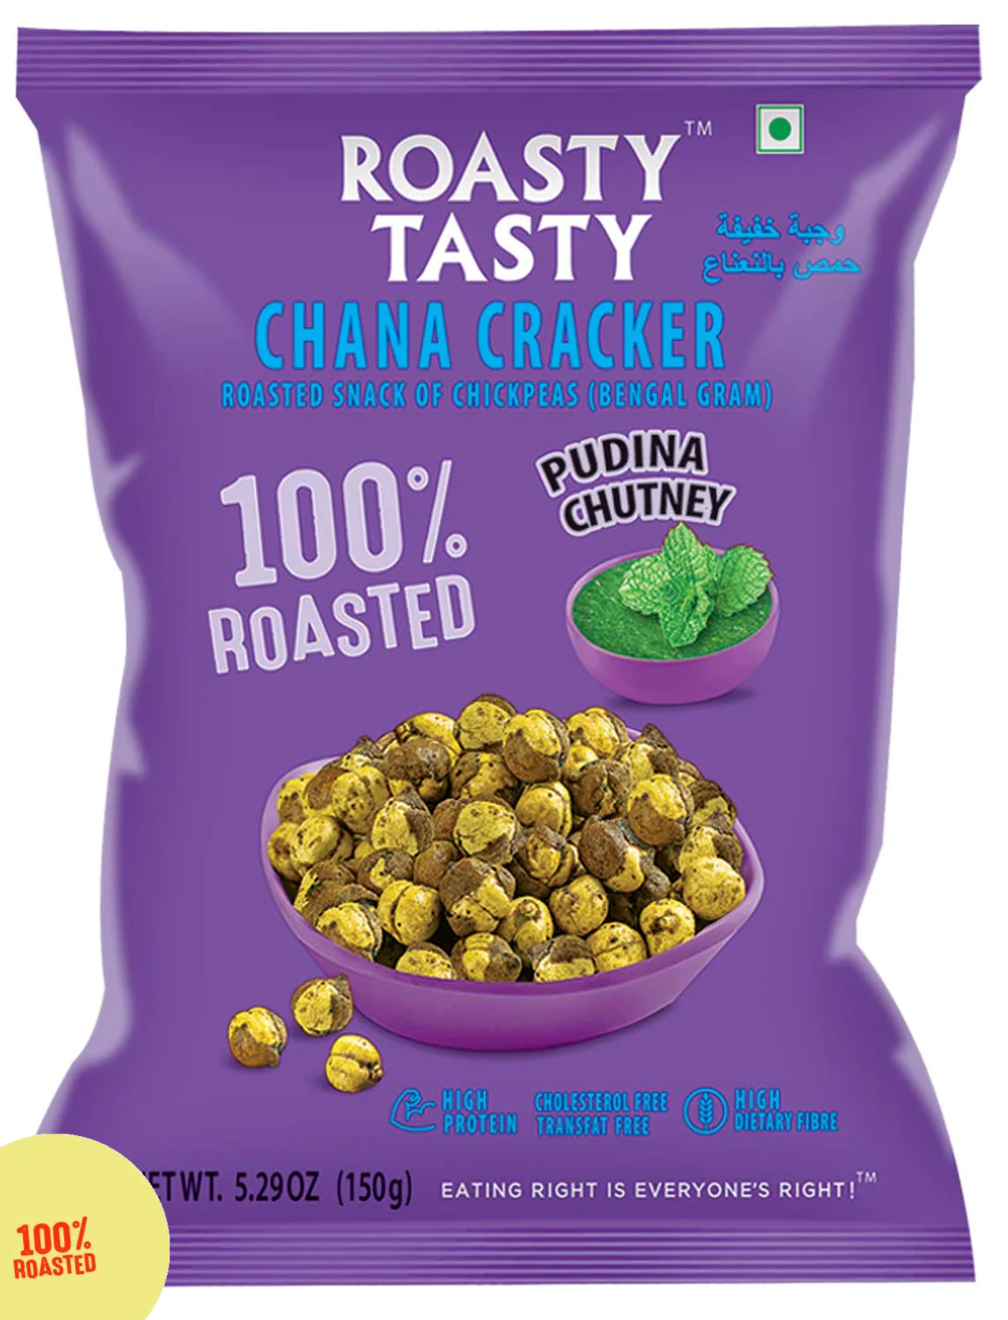 Roasty Tasty Chana Cracker, Pudina Chutney, 150 g